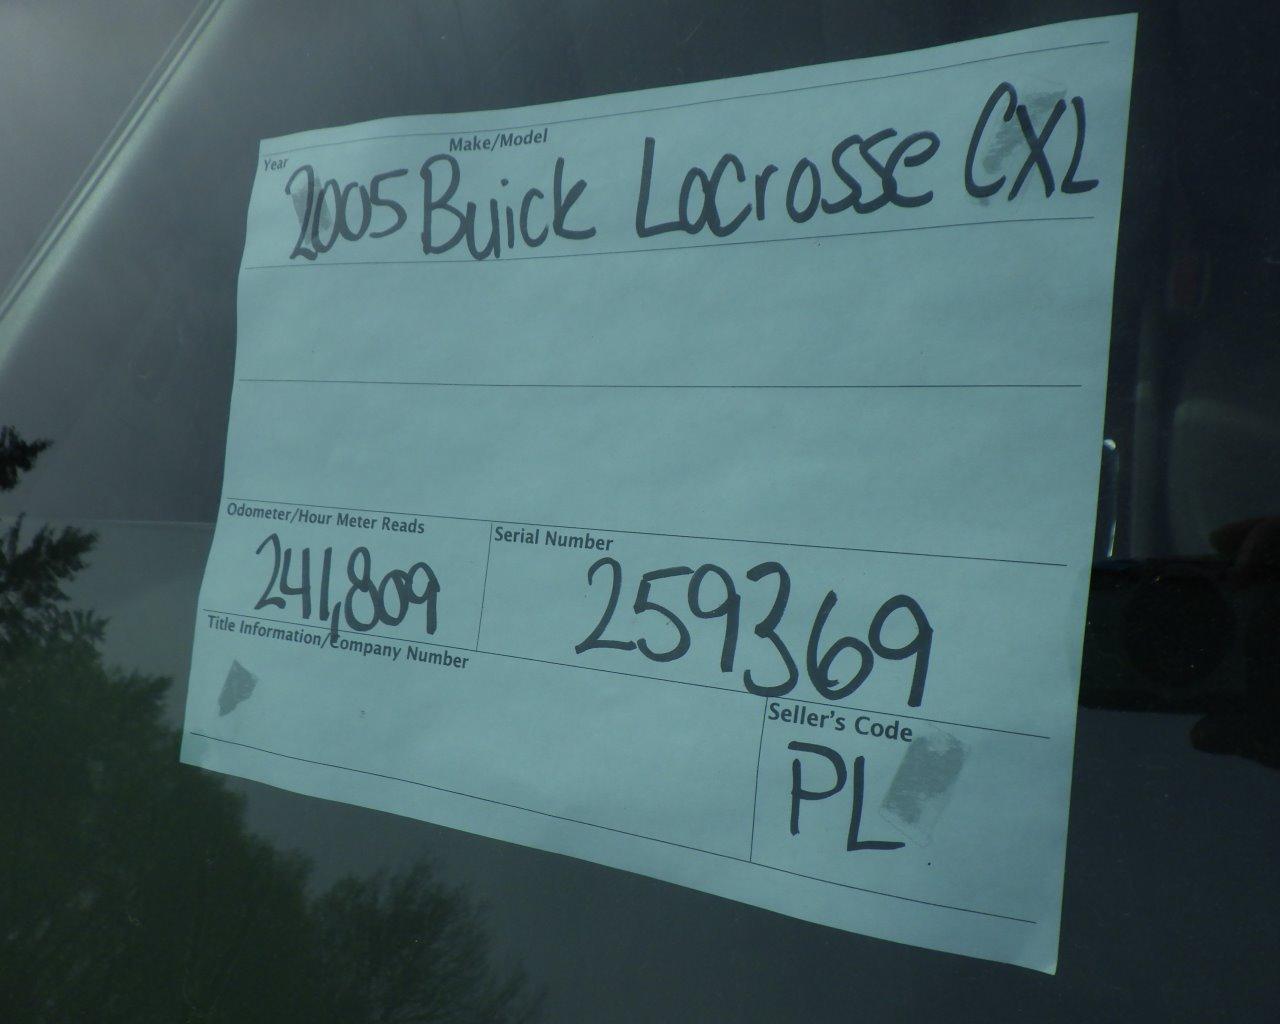 2005 BUICK Lacrosse CXL s/n:259369